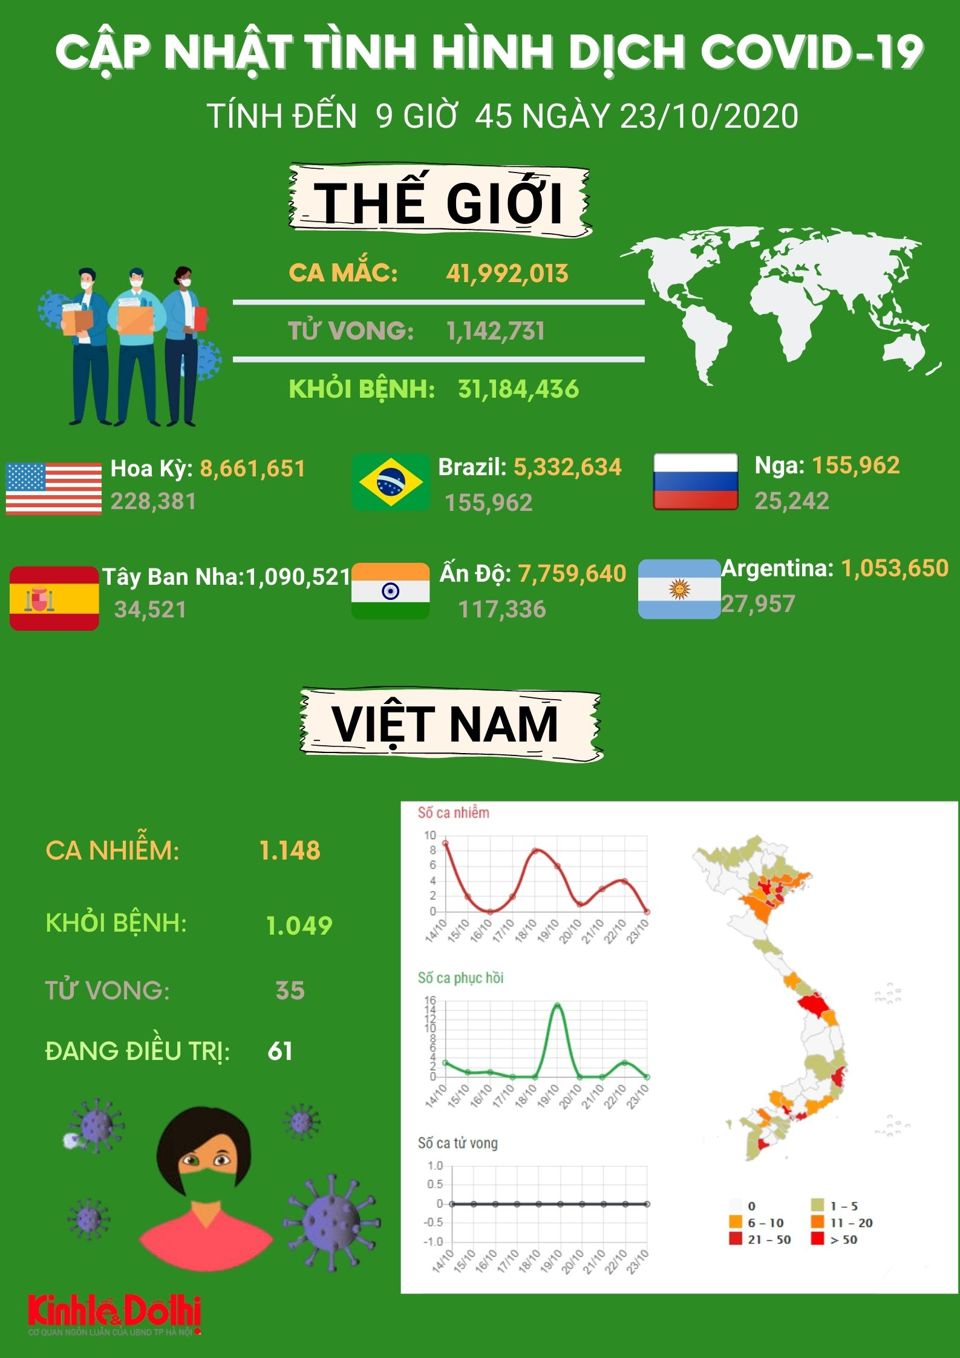 [Infographic] Gần 42 triệu người trên toàn cầu mắc Covid-19 - Ảnh 1